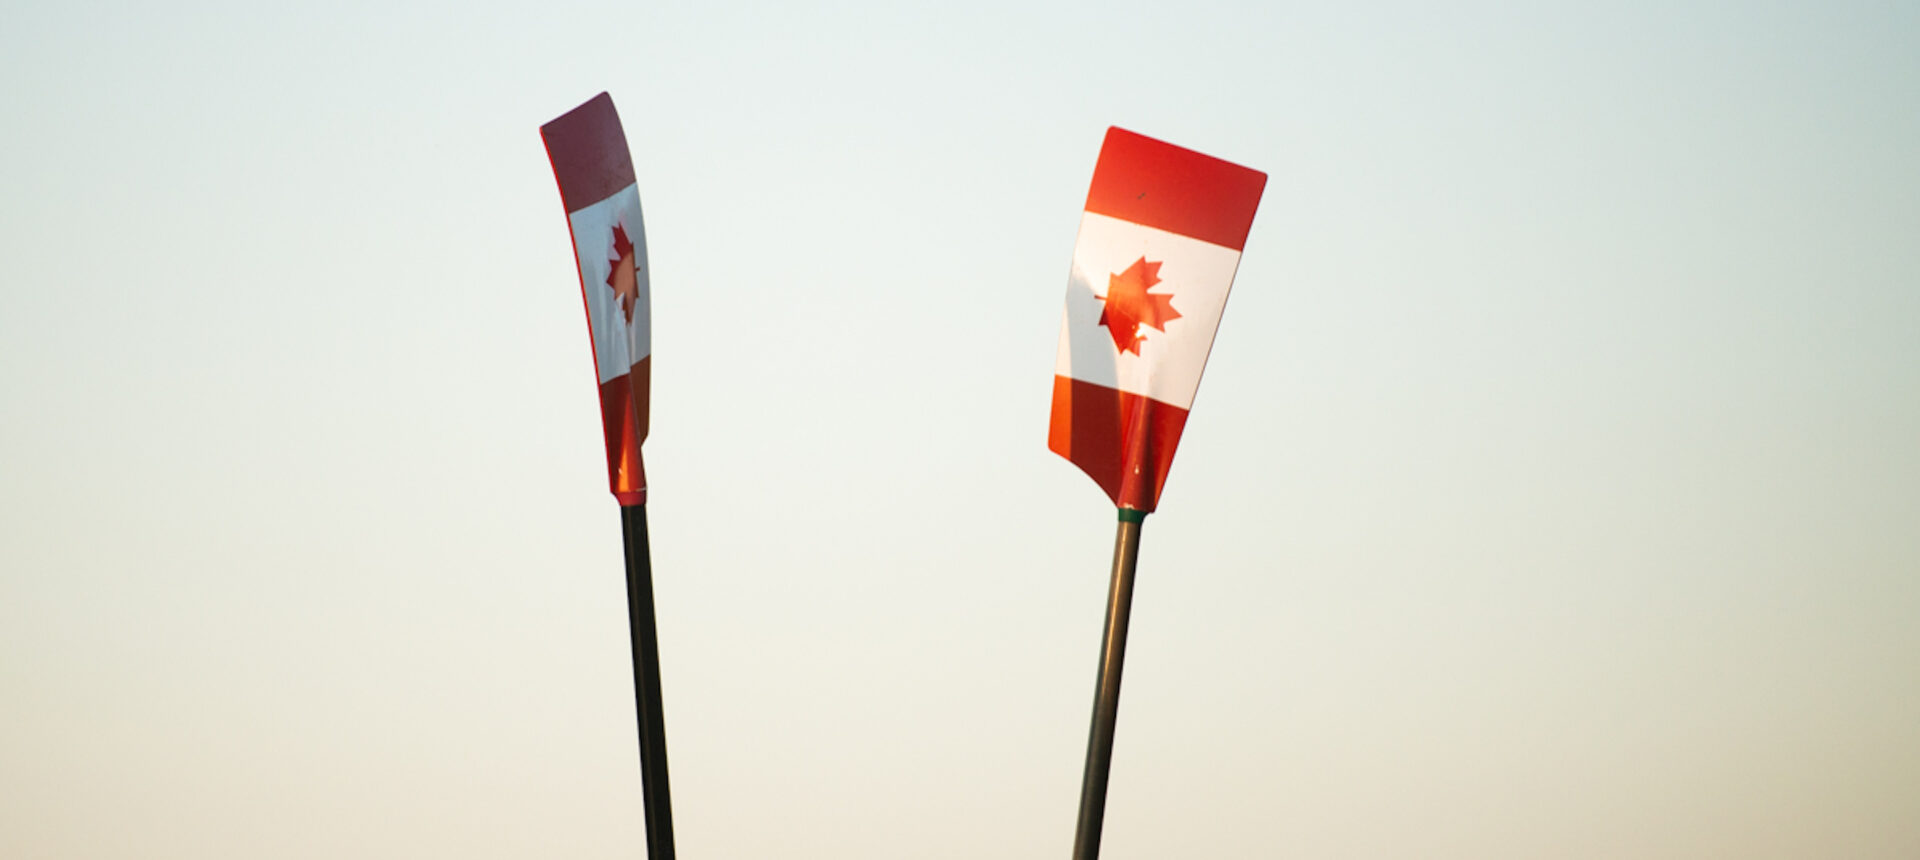 Les trois embarcations canadiennes remportent les éliminatoires dans la régate de qualification olympique